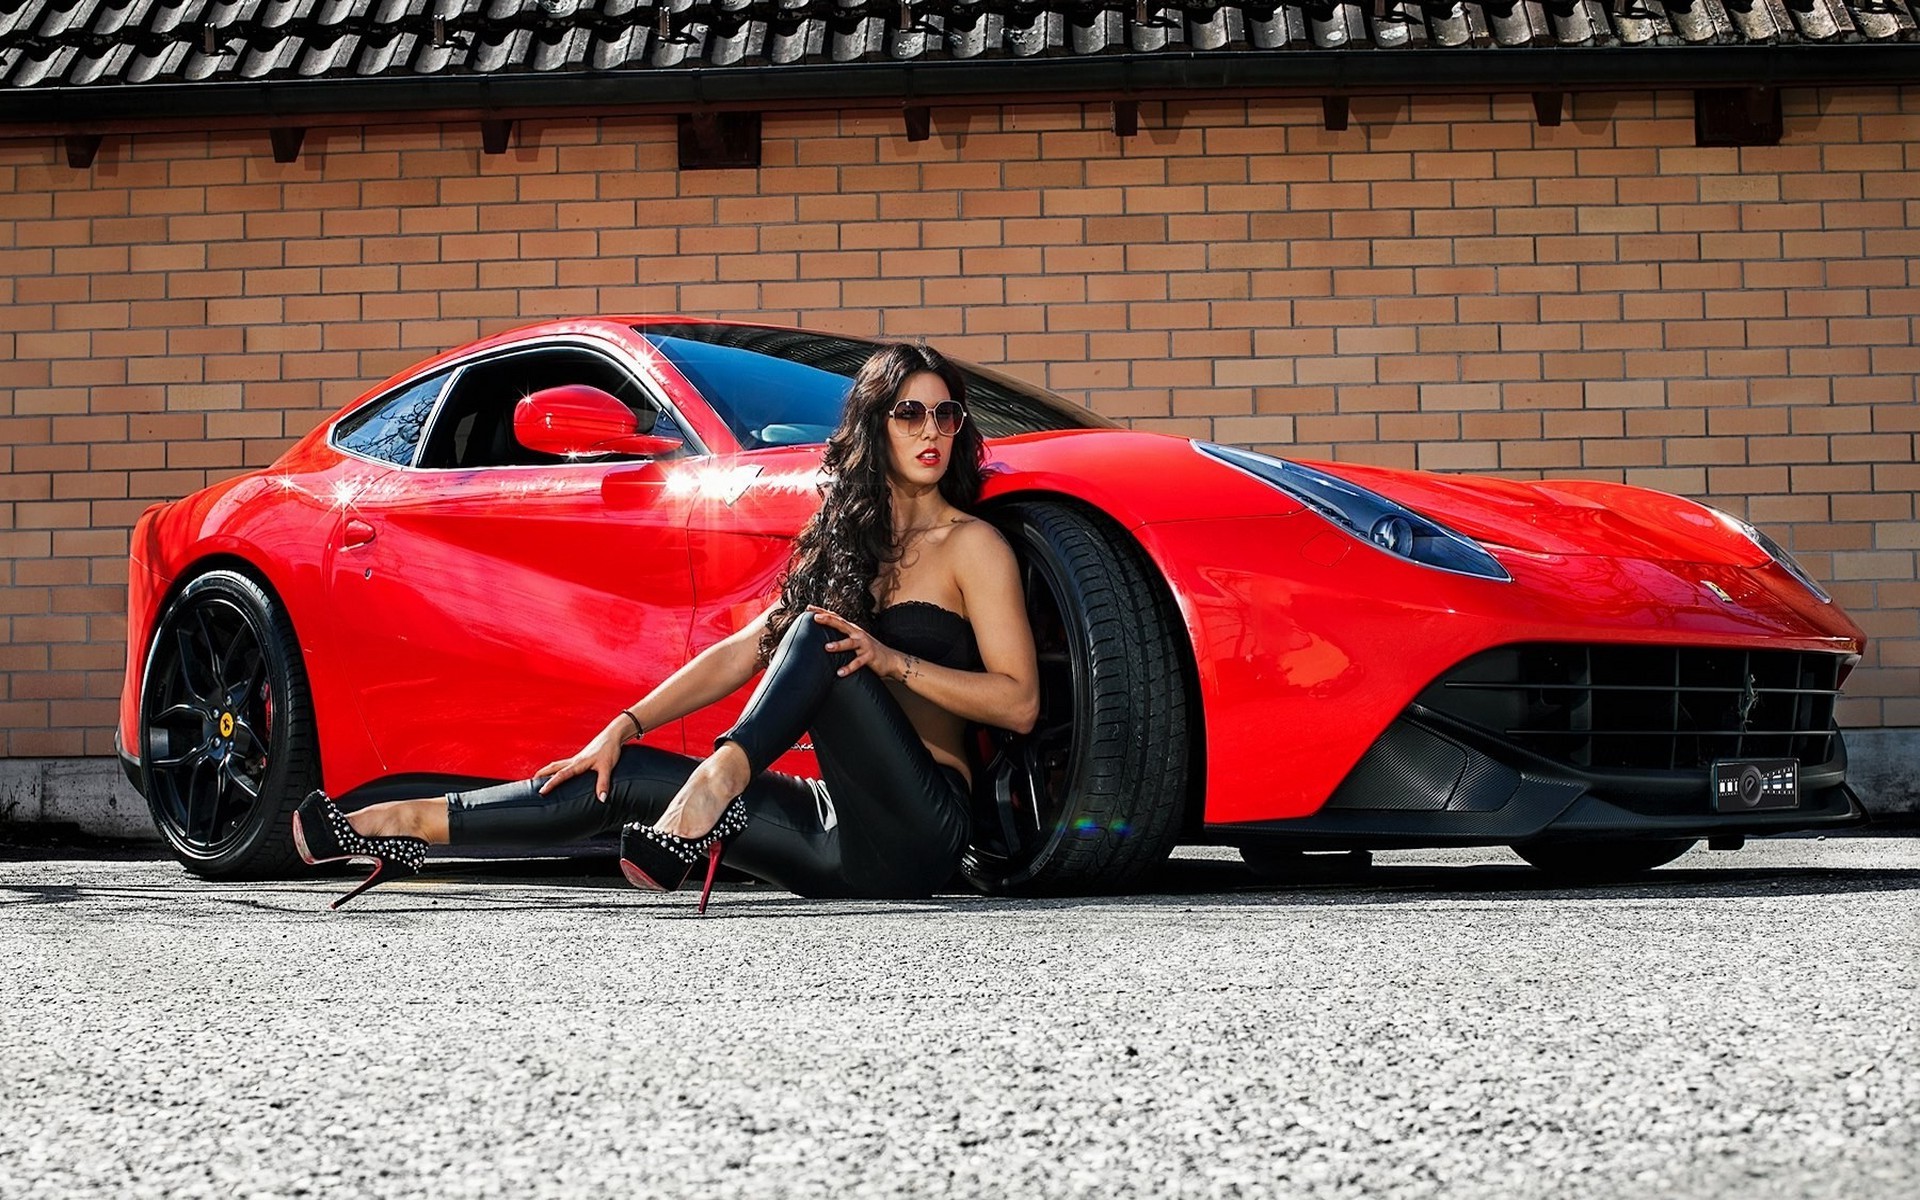 women, Ferrari, Car, Brunette, High Heels, Super Car, Women With Cars, Red Cars Wallpaper